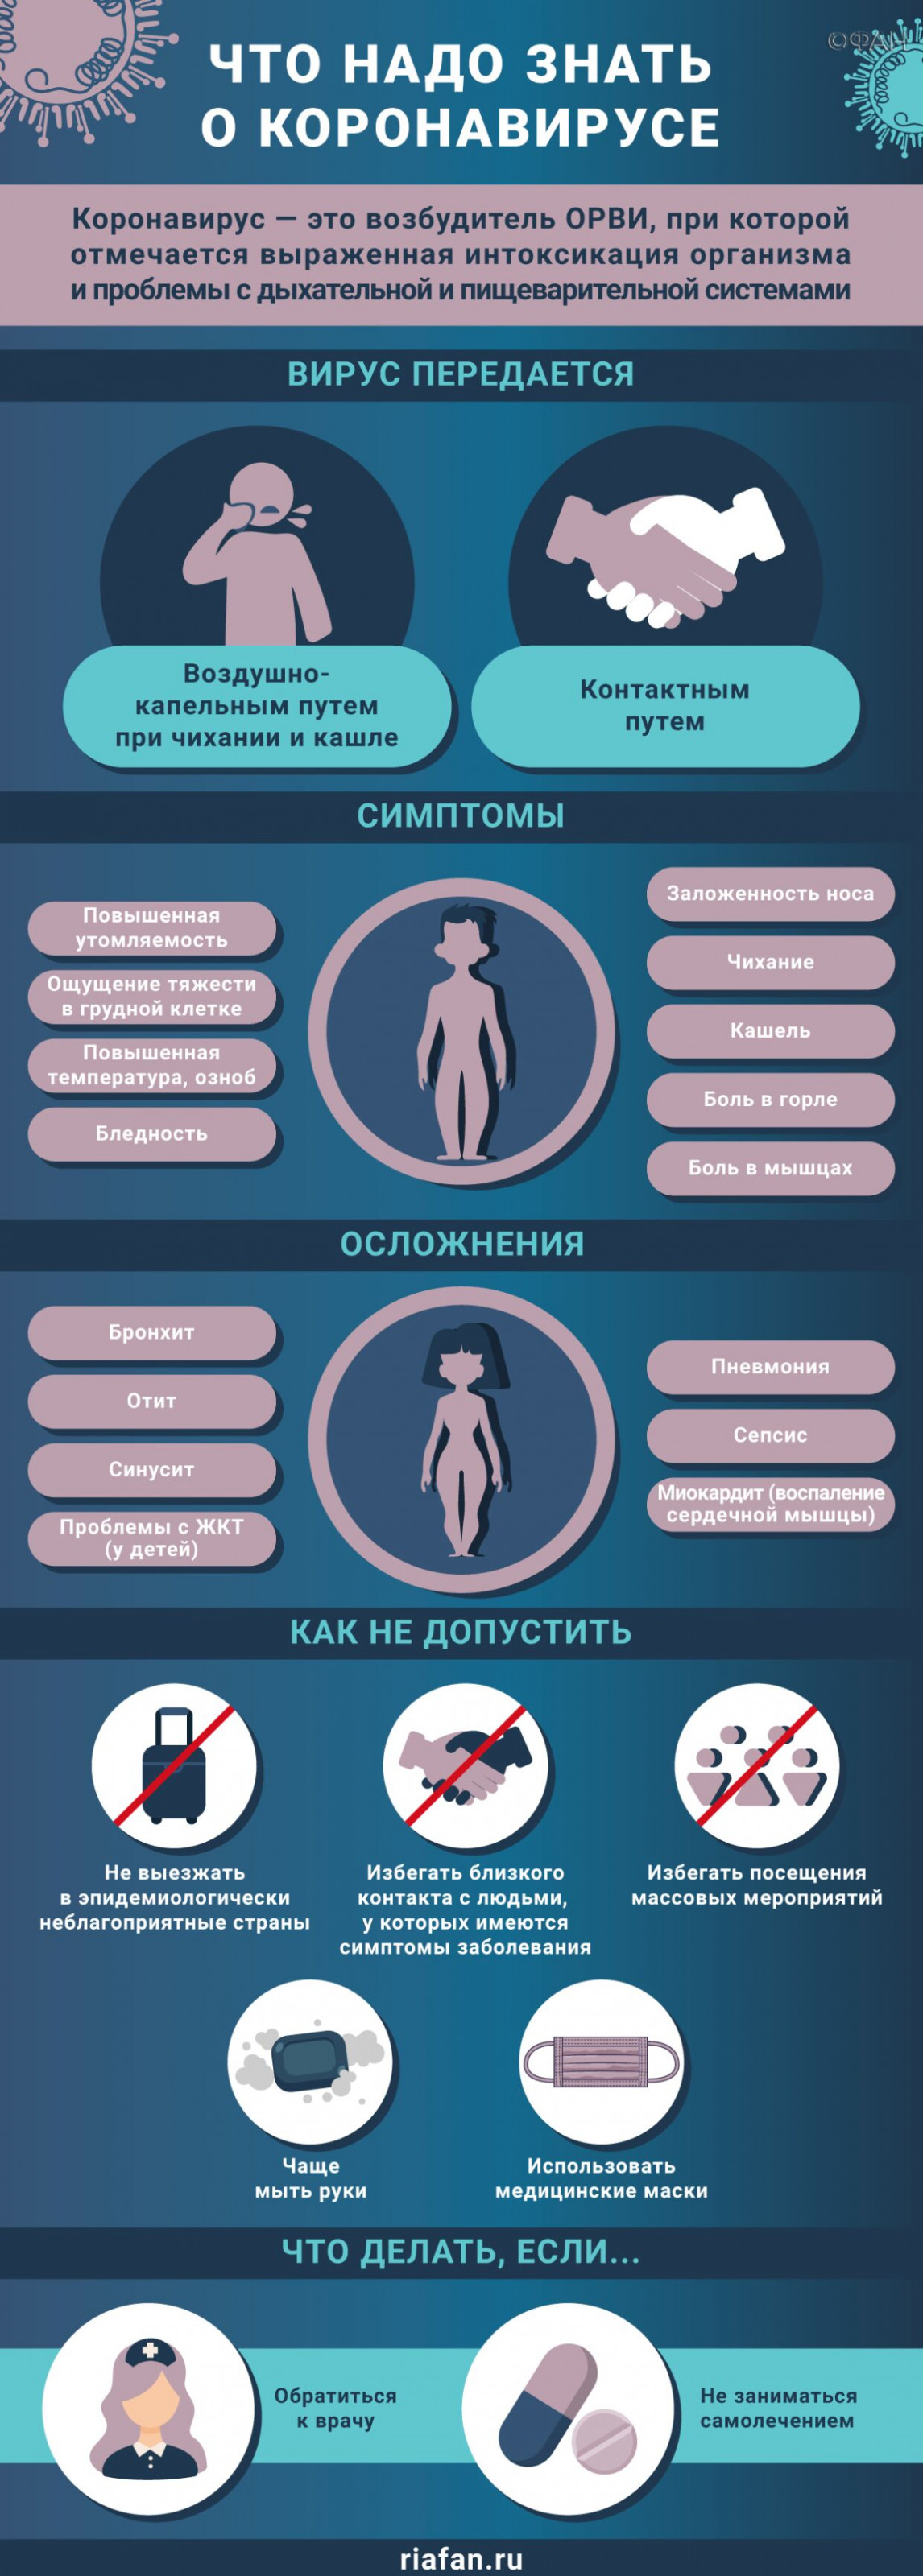 В Петербурге за сутки выявили 162 случая коронавируса